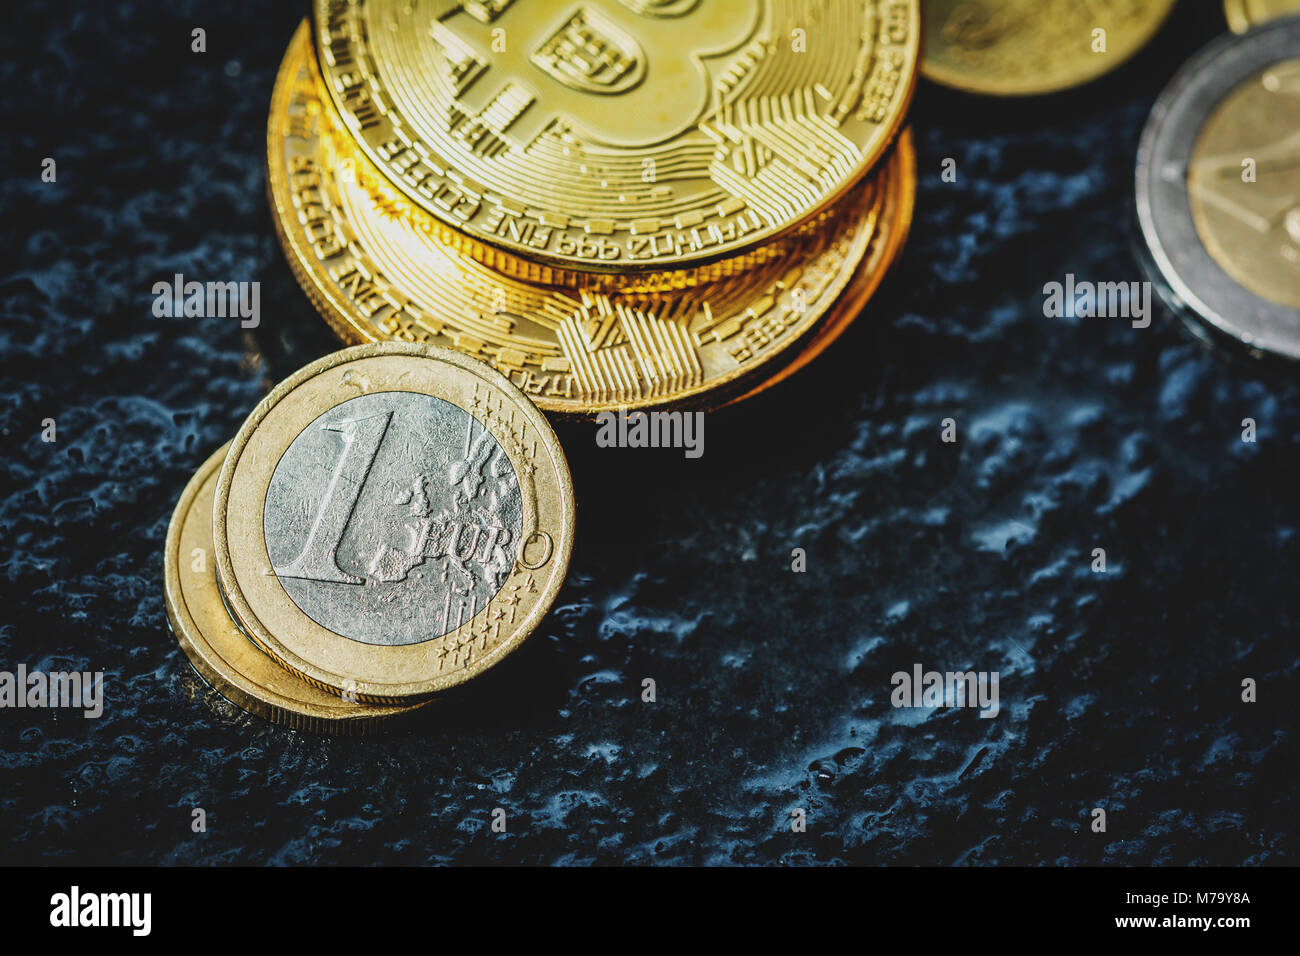 Moneta virtuale Bitcoin e Euro moneta sul tavolo scuro Foto Stock